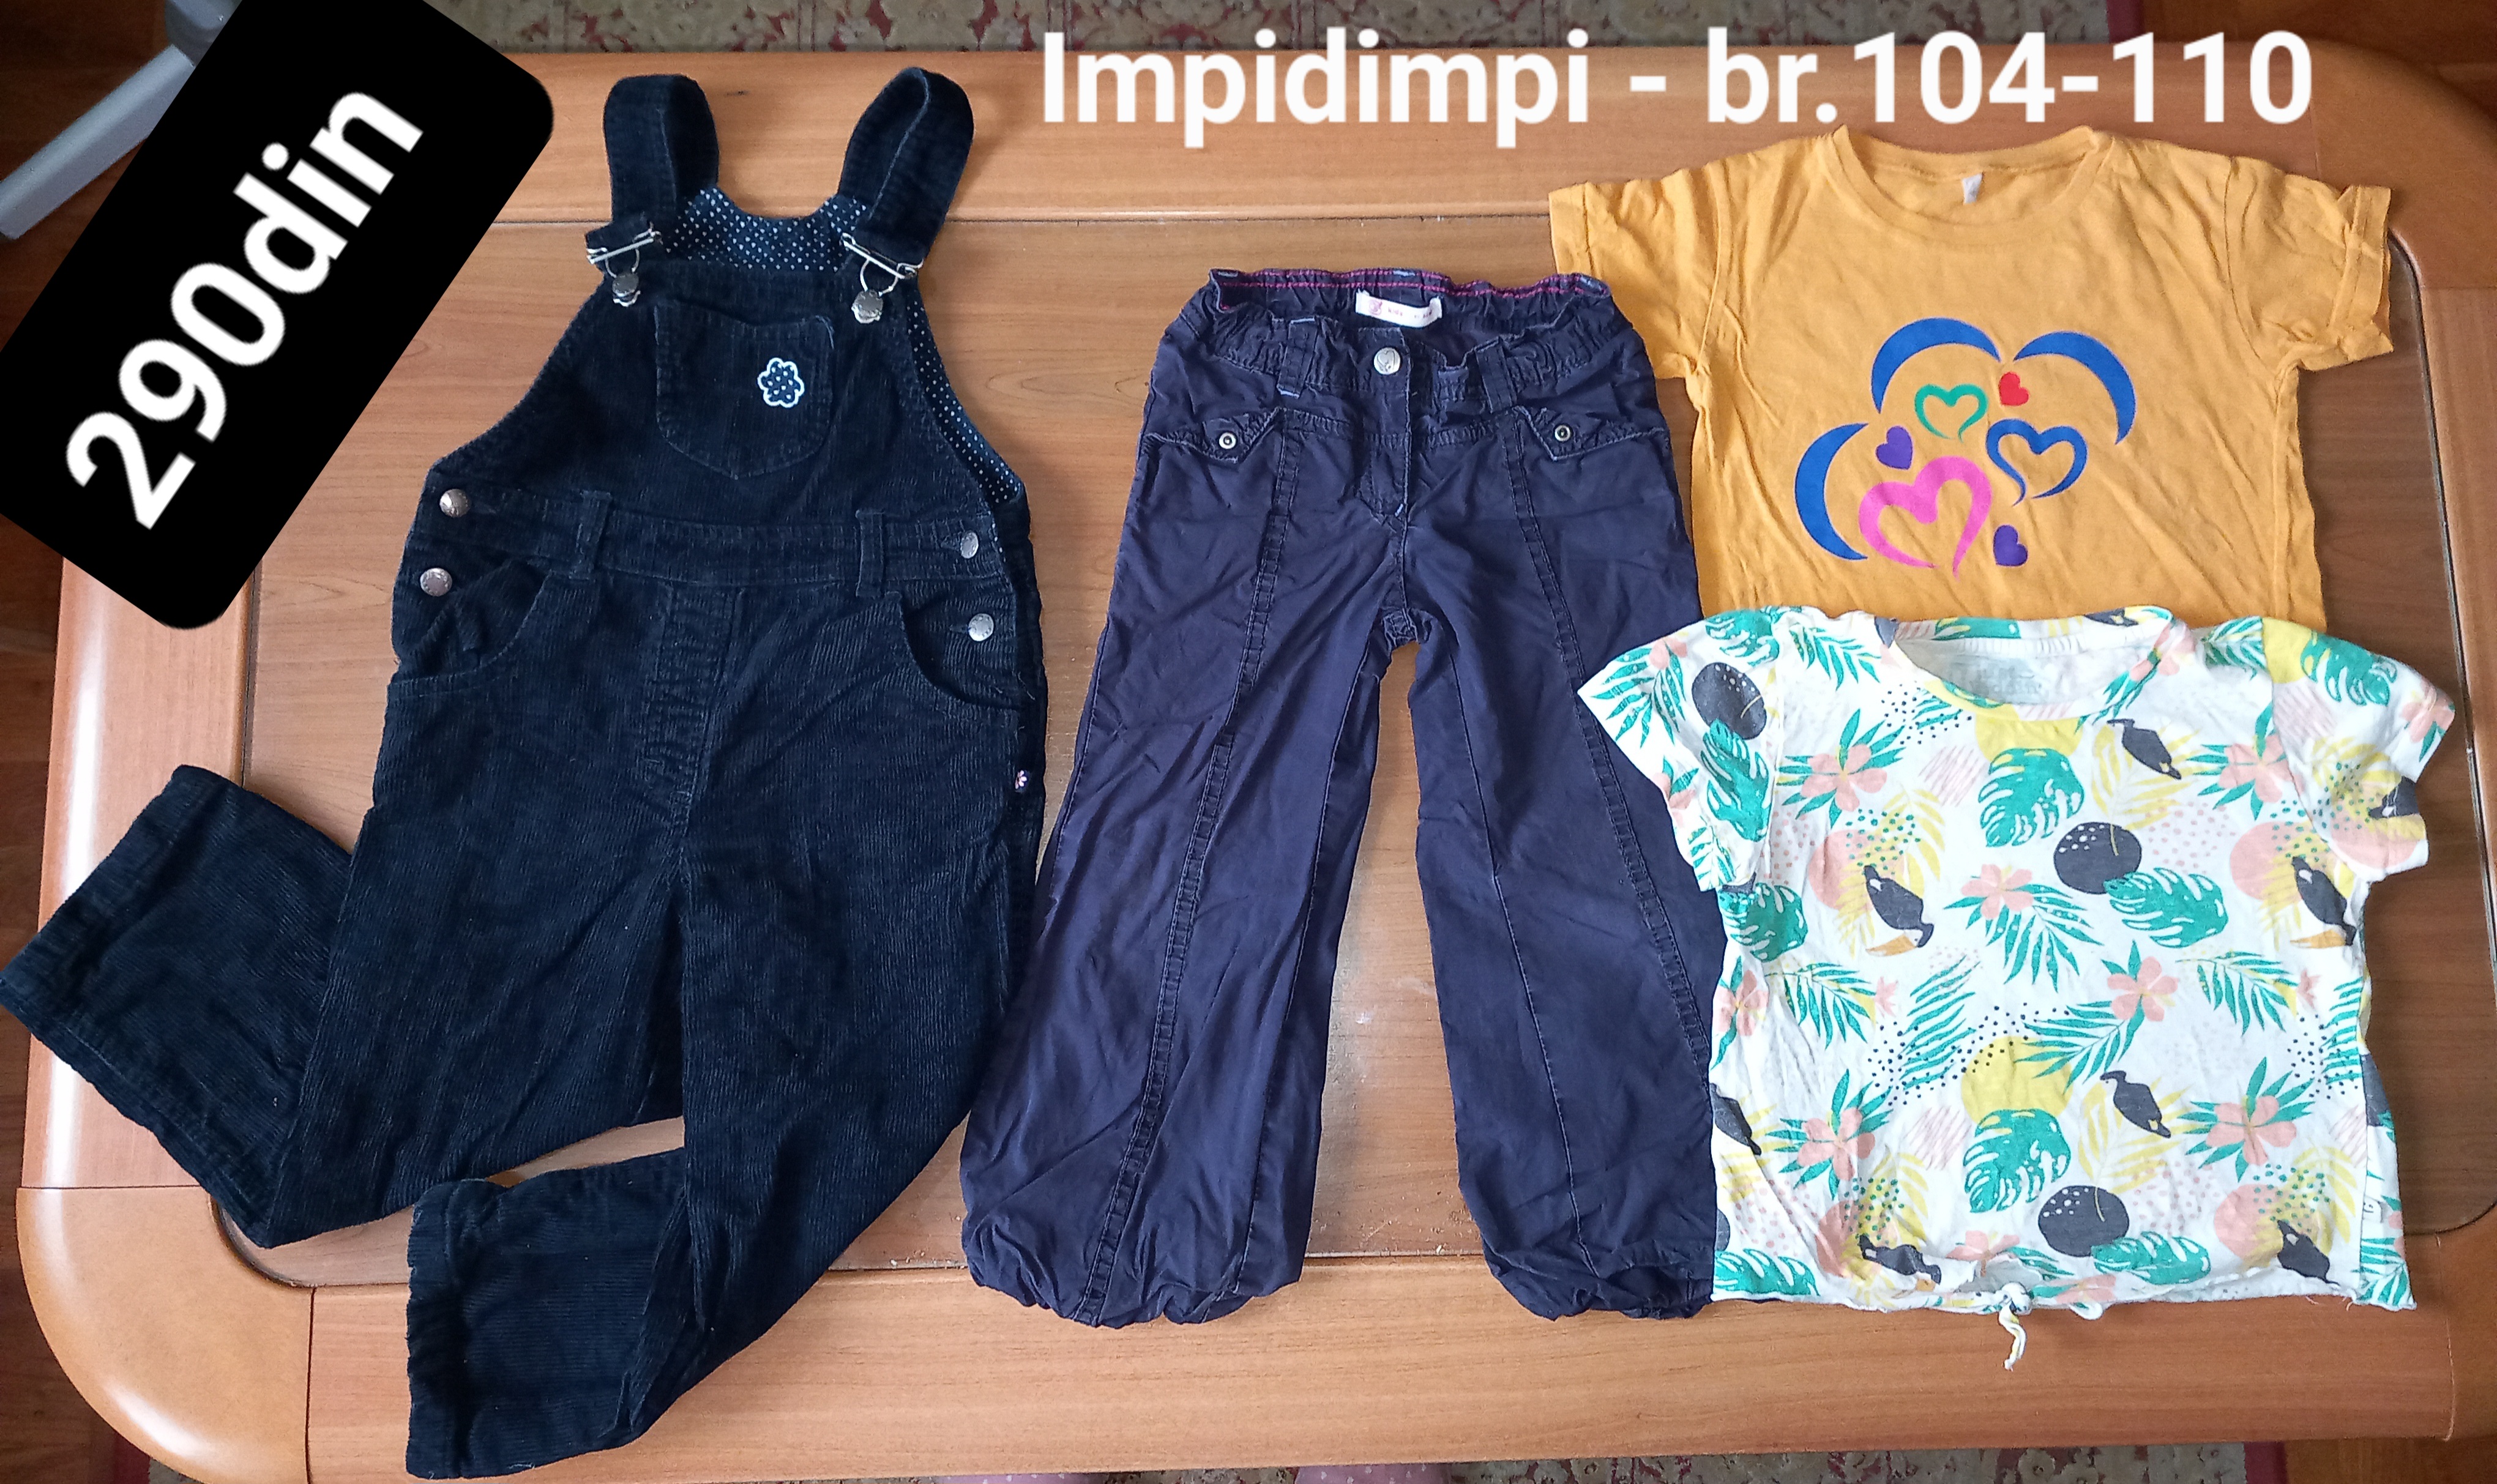 Impidimpi pantalone majice za devojčice br. 104-110